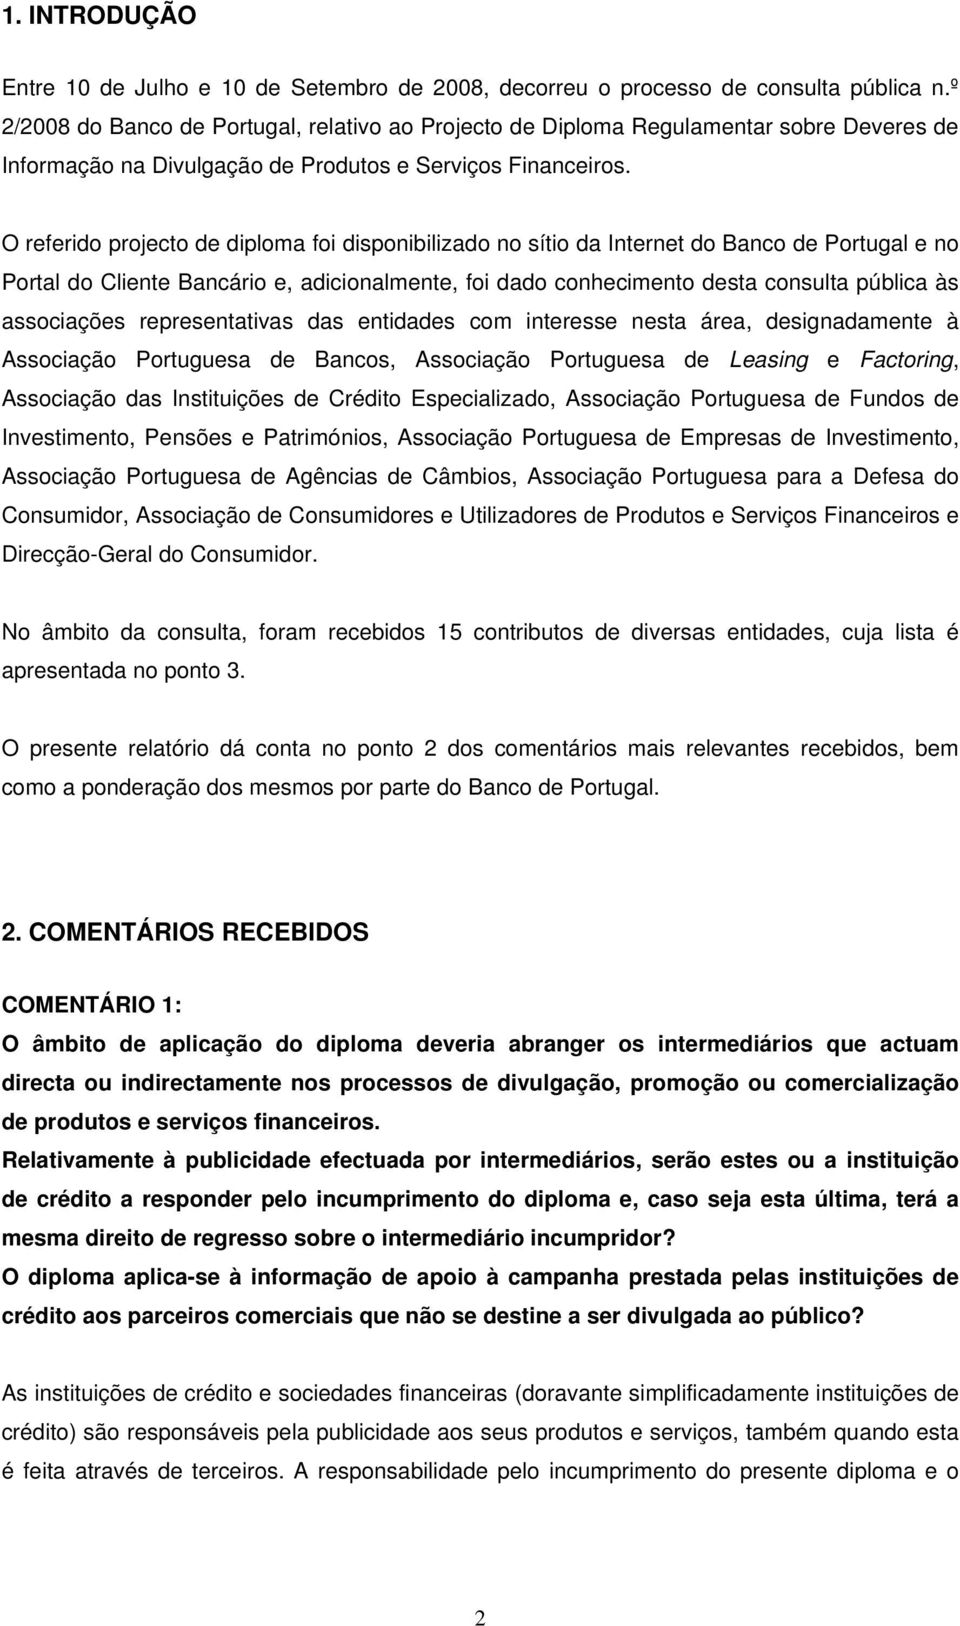 O referido projecto de diploma foi disponibilizado no sítio da Internet do Banco de Portugal e no Portal do Cliente Bancário e, adicionalmente, foi dado conhecimento desta consulta pública às